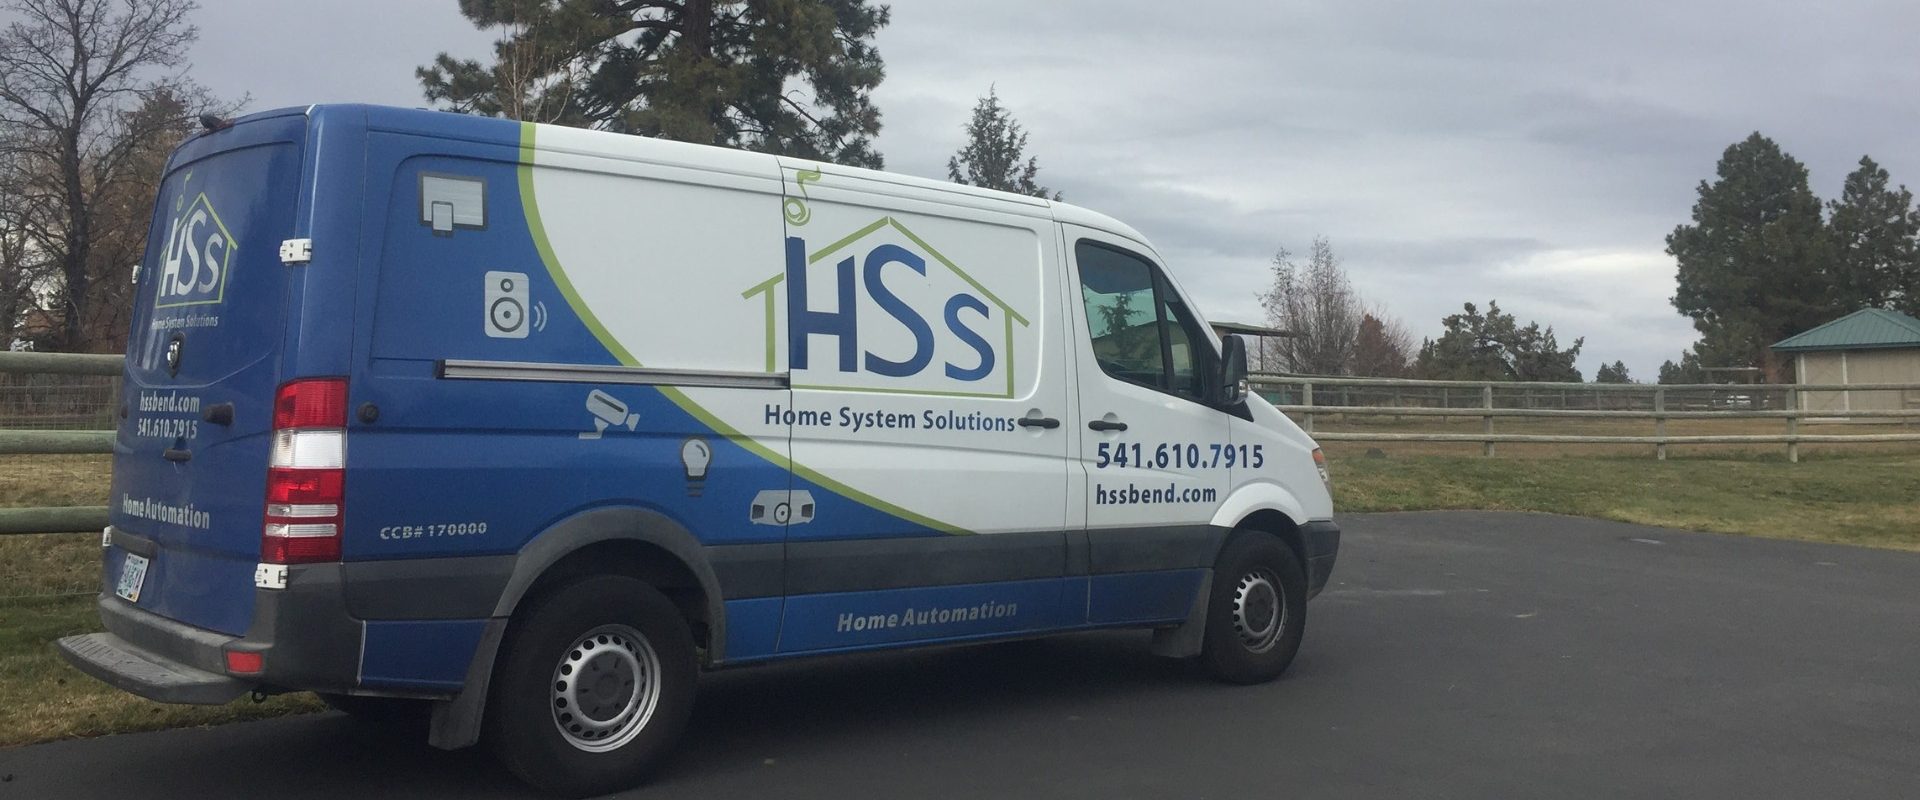 HSS van out on a job